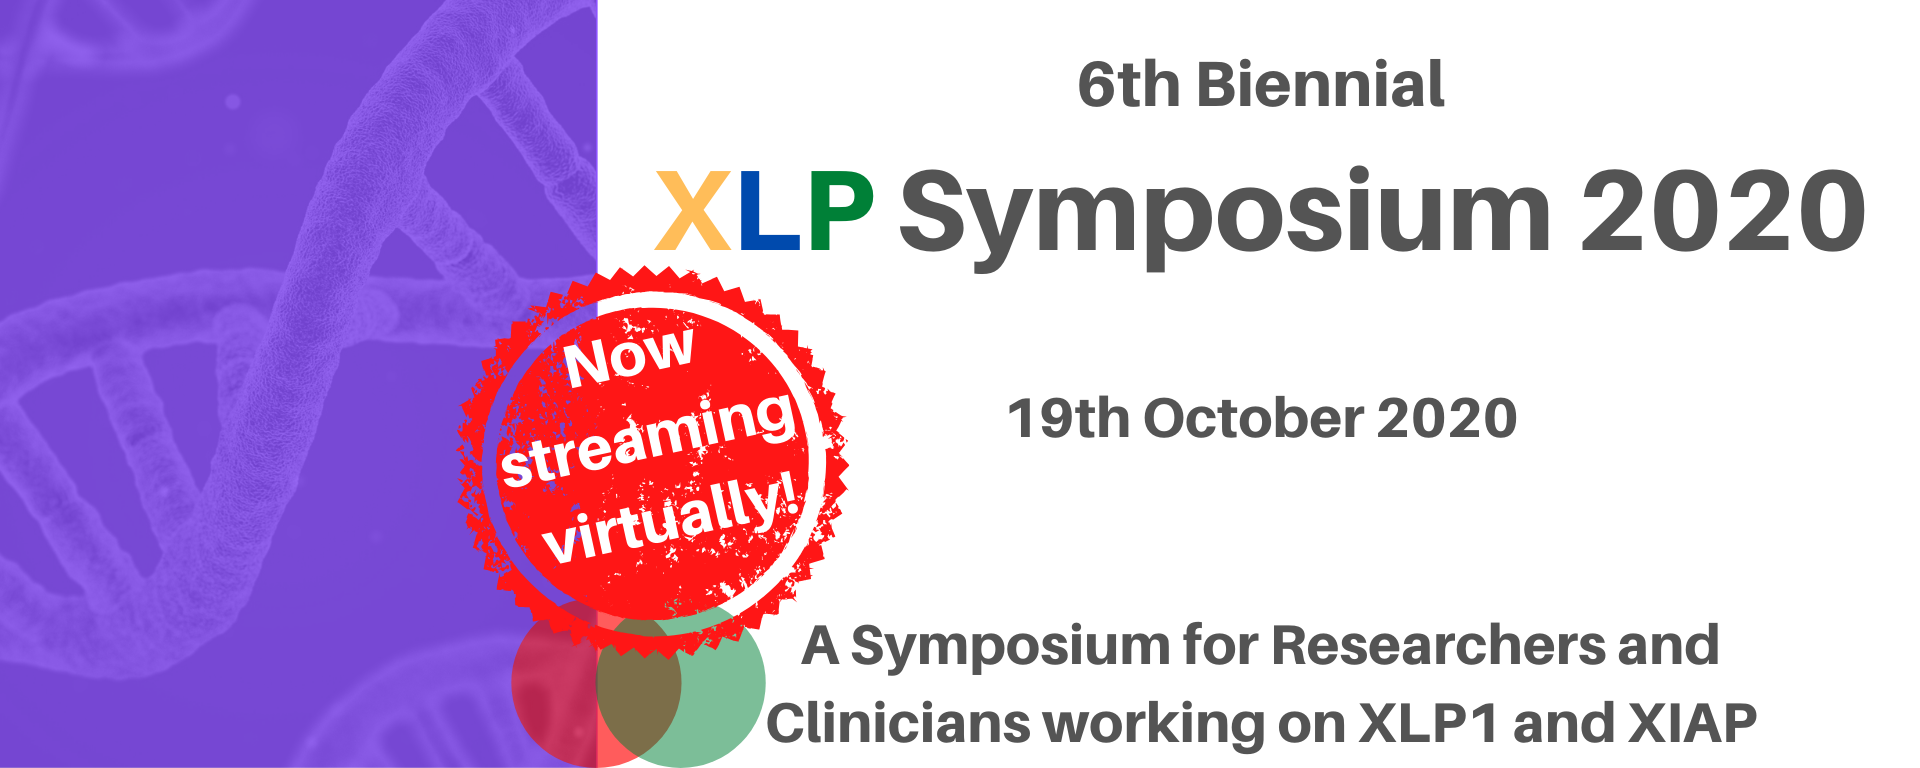 Xlp Symposium 2020 Virtual